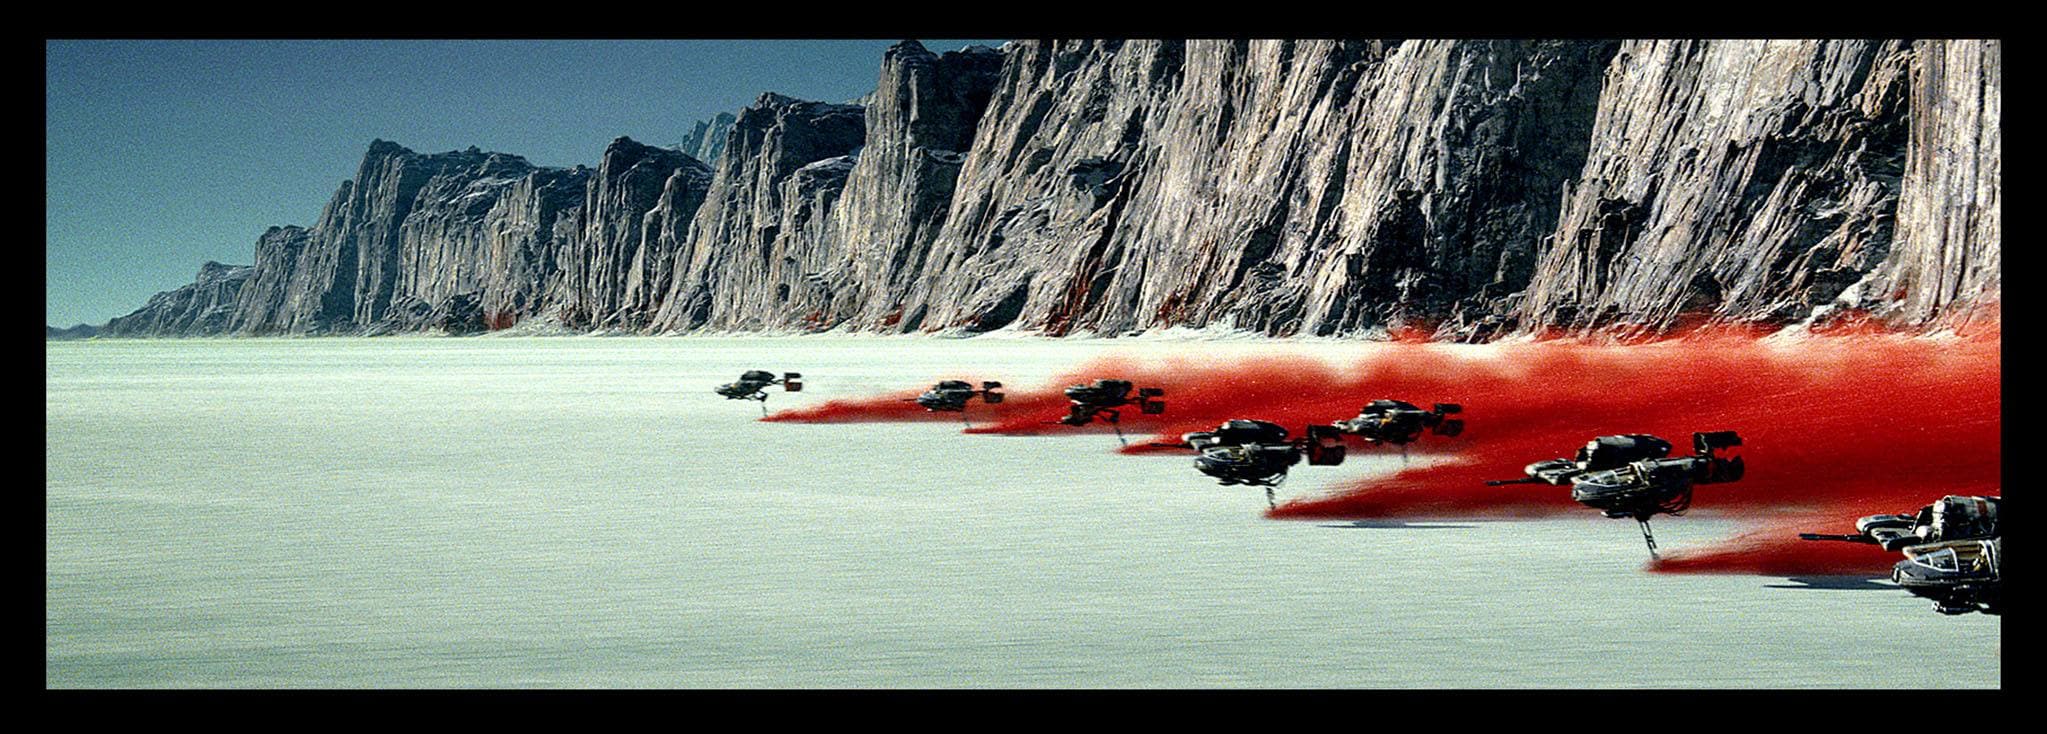 La octava entrega de la saga de George Lucas ' Star Wars VIII: Los últimos jedi ' recupera la esencia de las películas de hace casi cuatro décadas para relanzar la franquicia